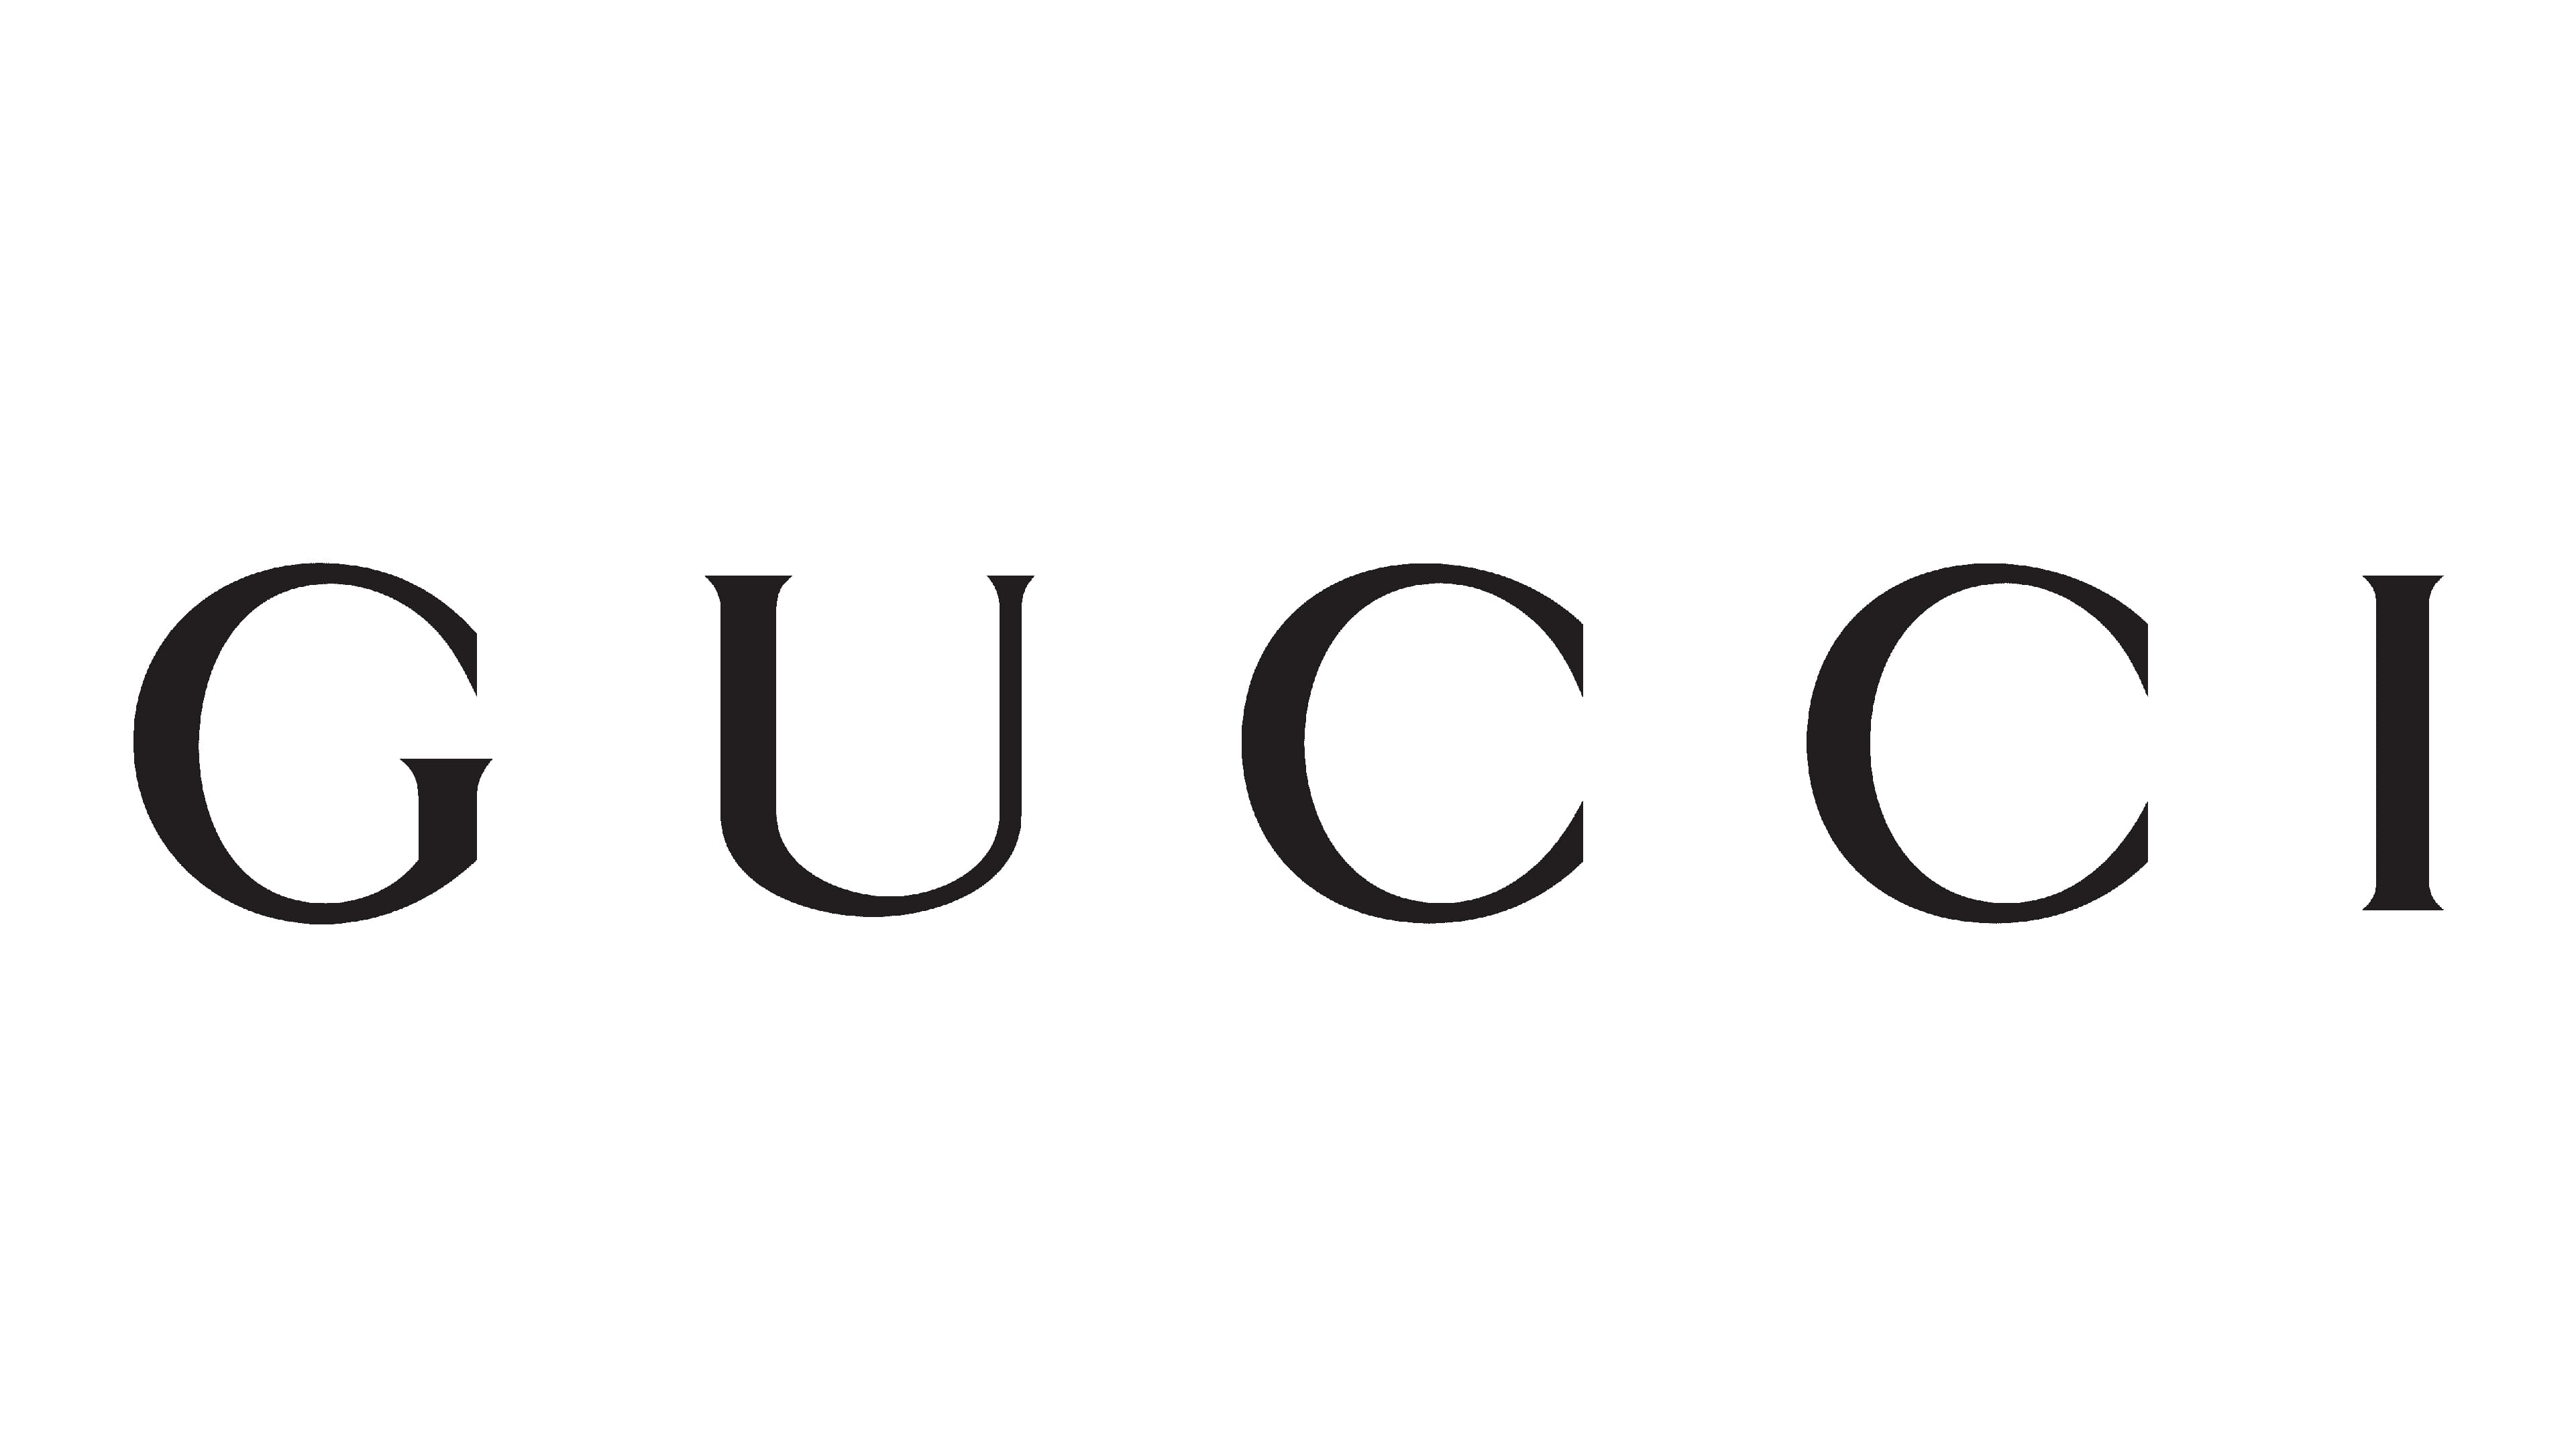 Cập nhật 51+ về chanel logo vs gucci logo mới nhất - cdgdbentre.edu.vn